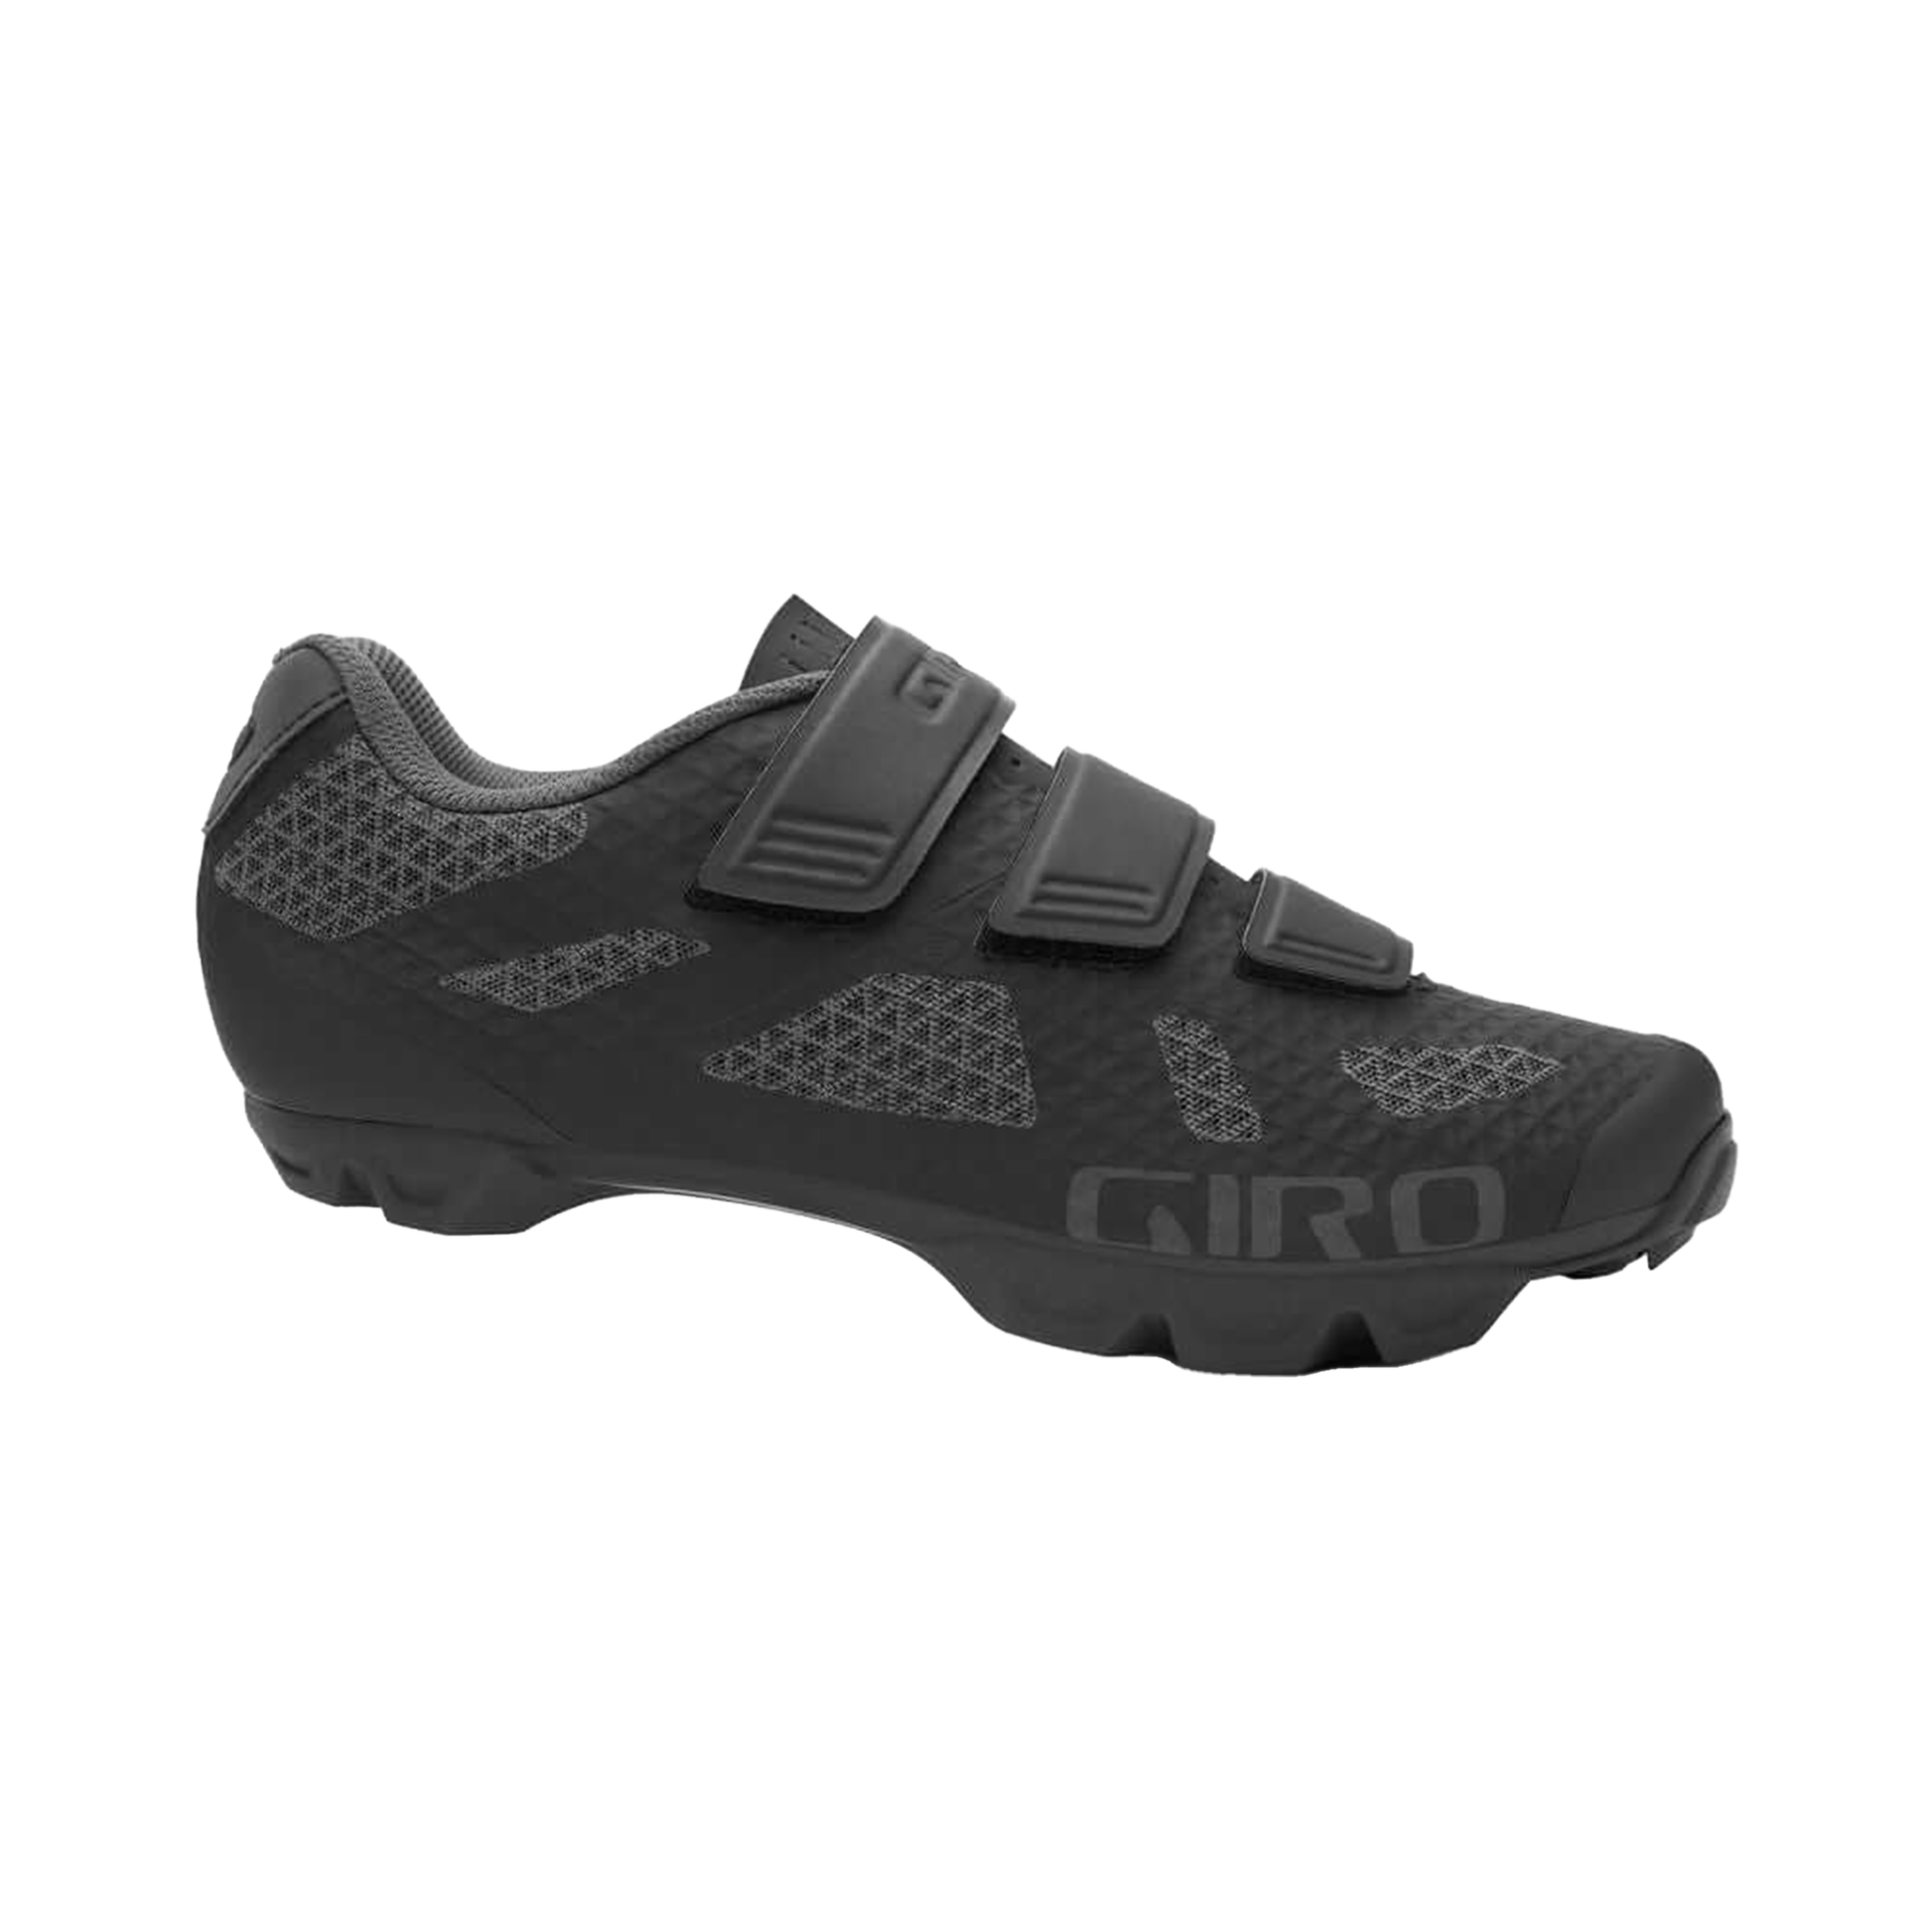 Giro Ranger Women's Shoe - OpenBox Black 42 Bike Shoes